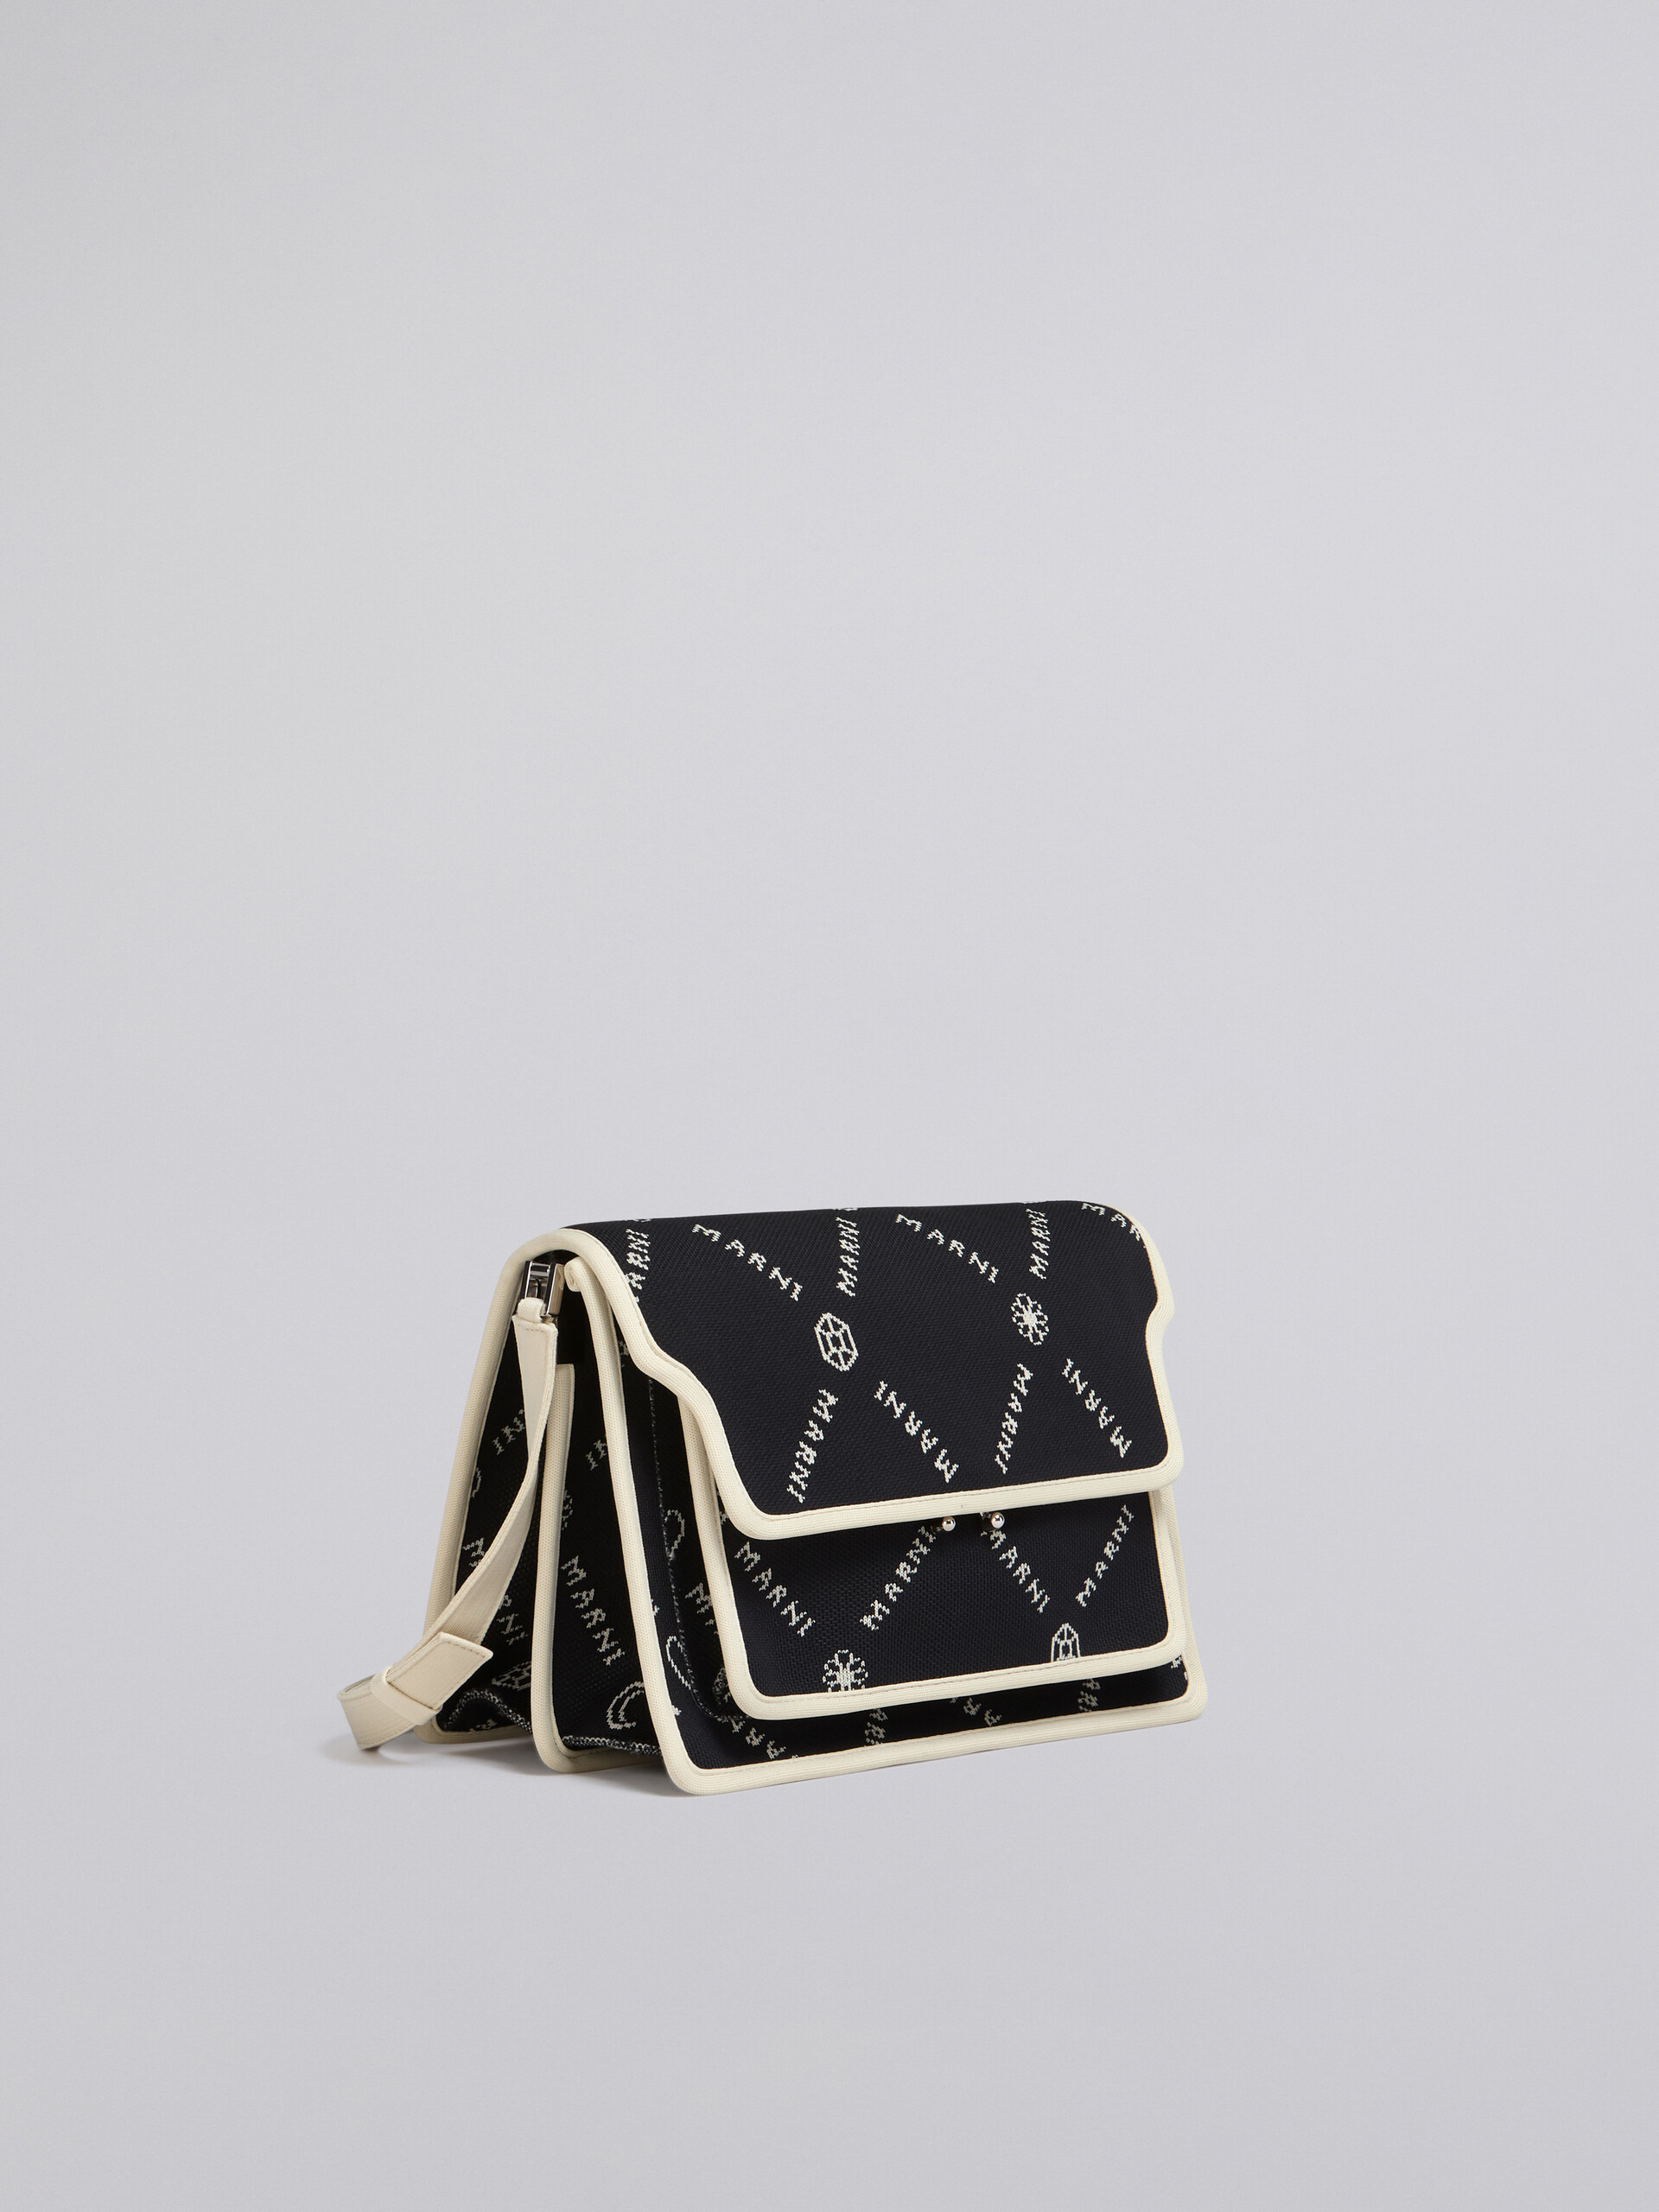 TRUNK SOFT large bag in black Marnigram jacquard - Shoulder Bag - Image 5